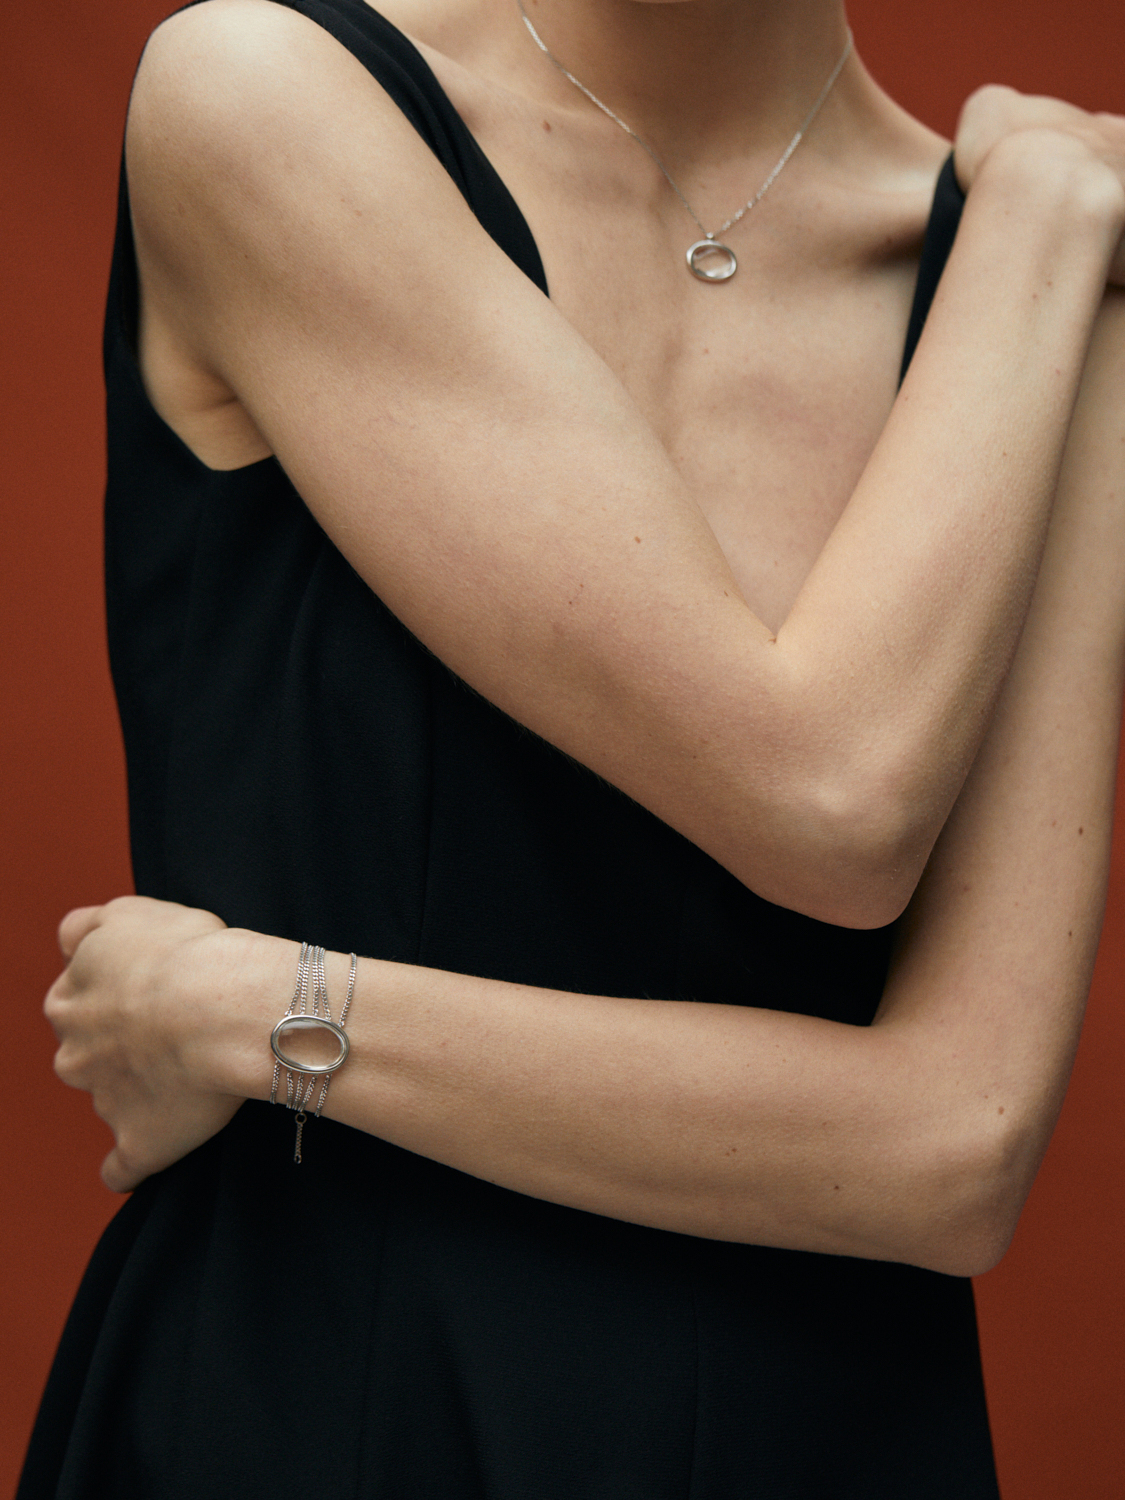 Avgvst выпустил браслет-коллар, вдохновленный ожерельем принцессы Дианы (фото 2)